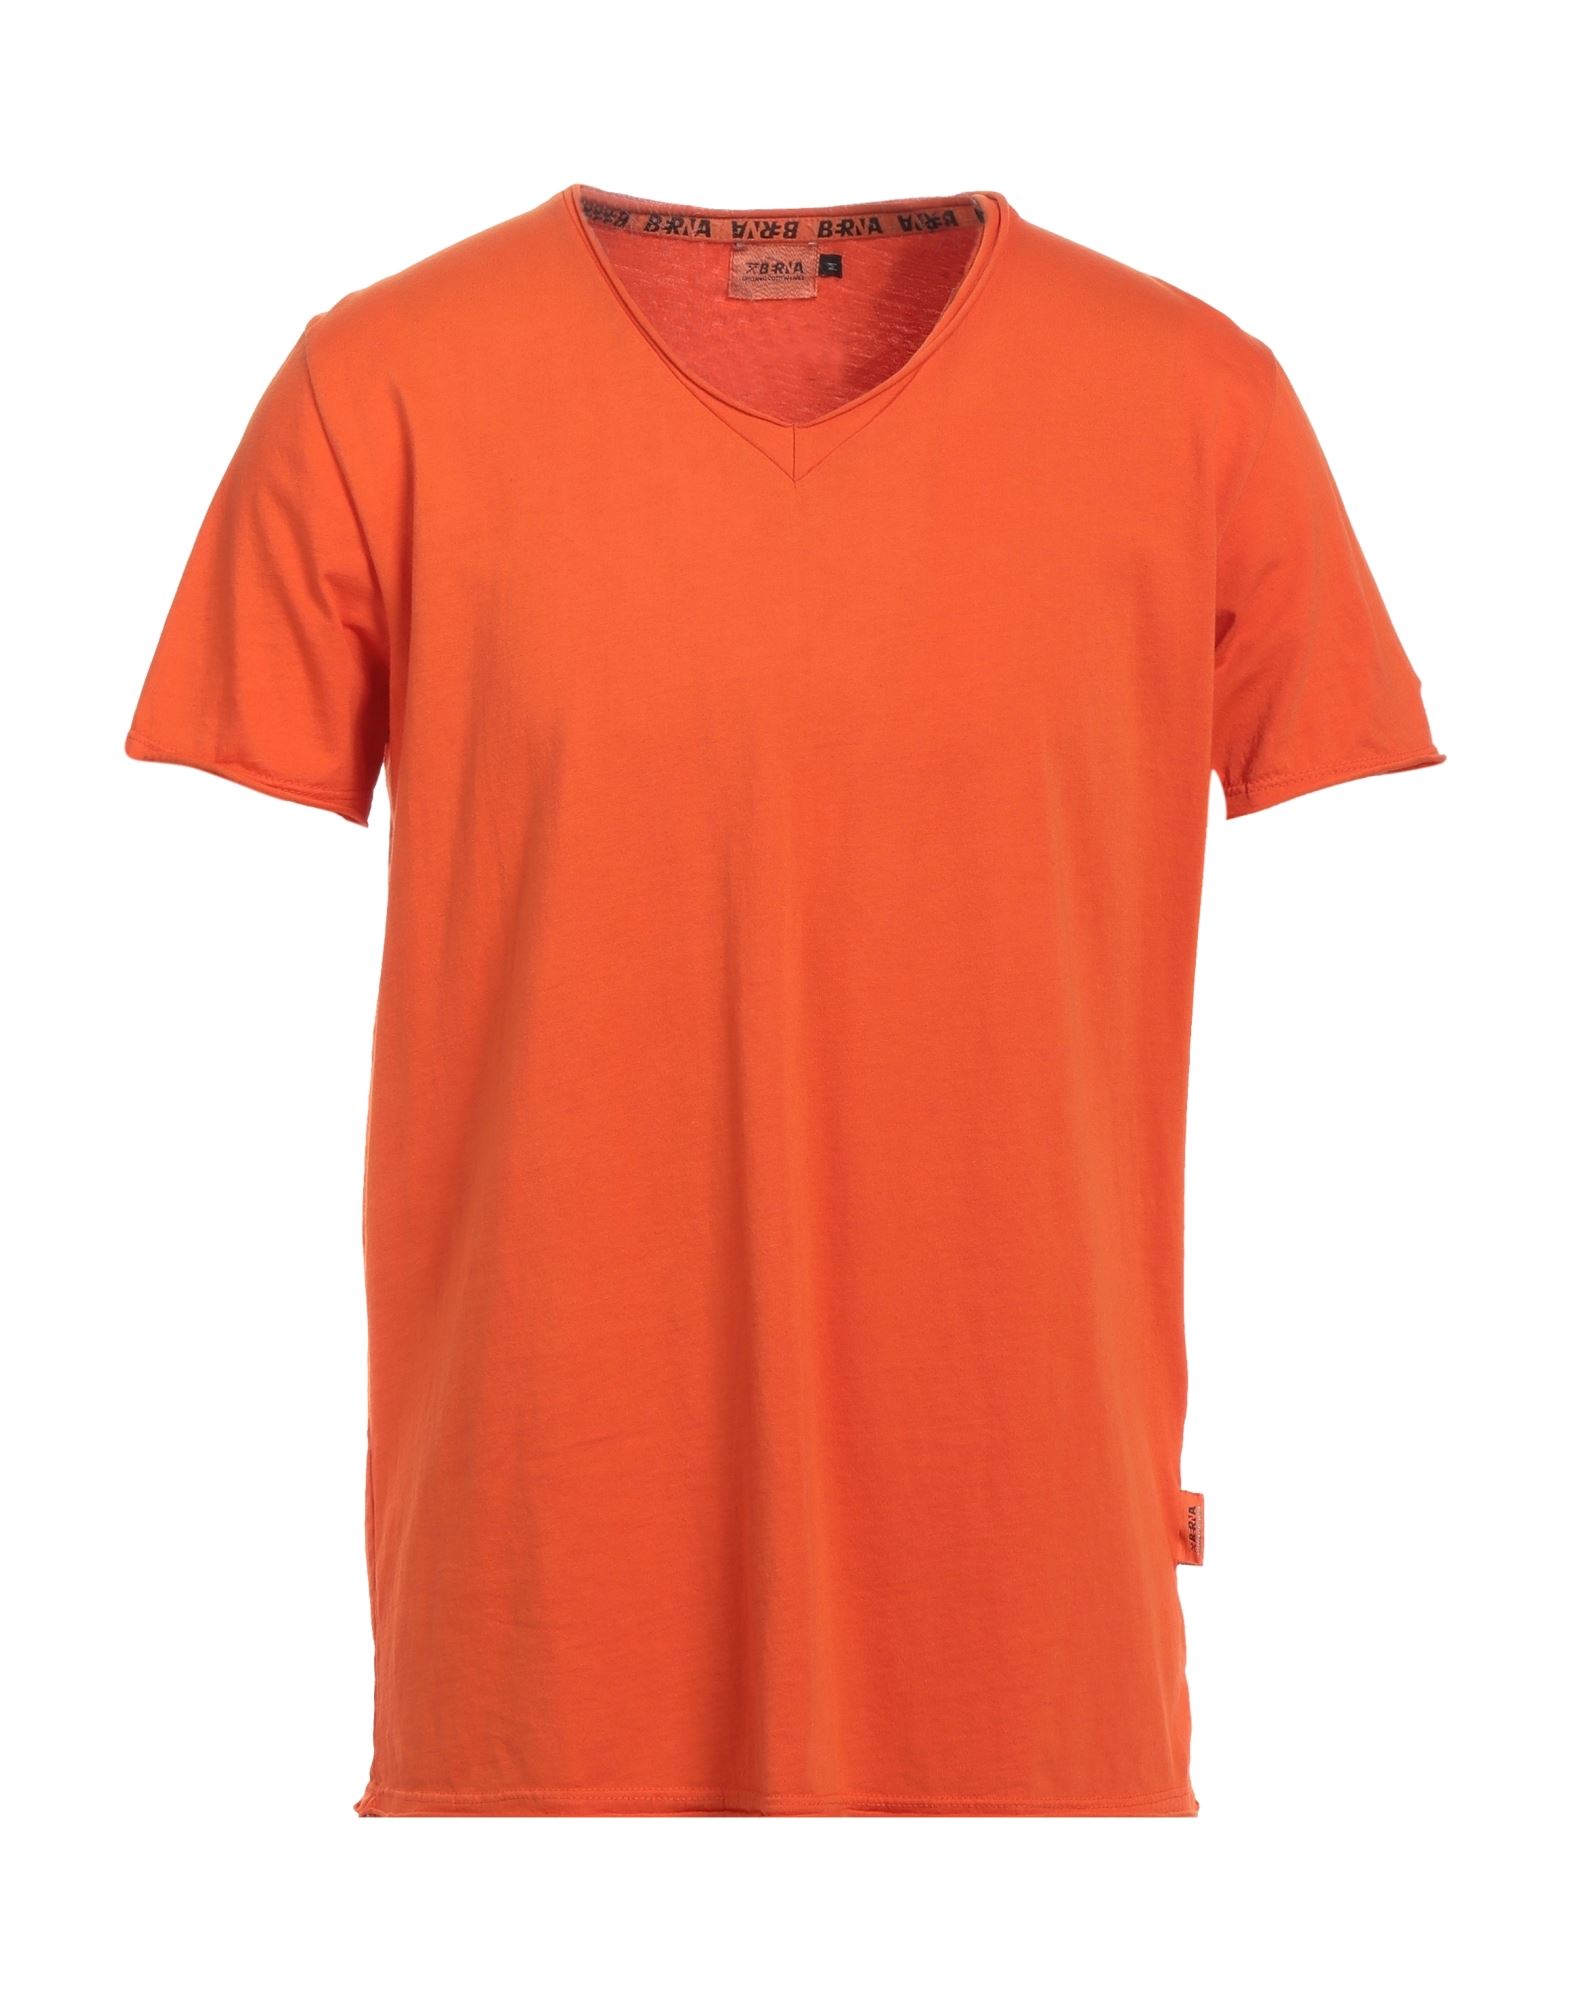 BERNA T-shirts Herren Orange von BERNA